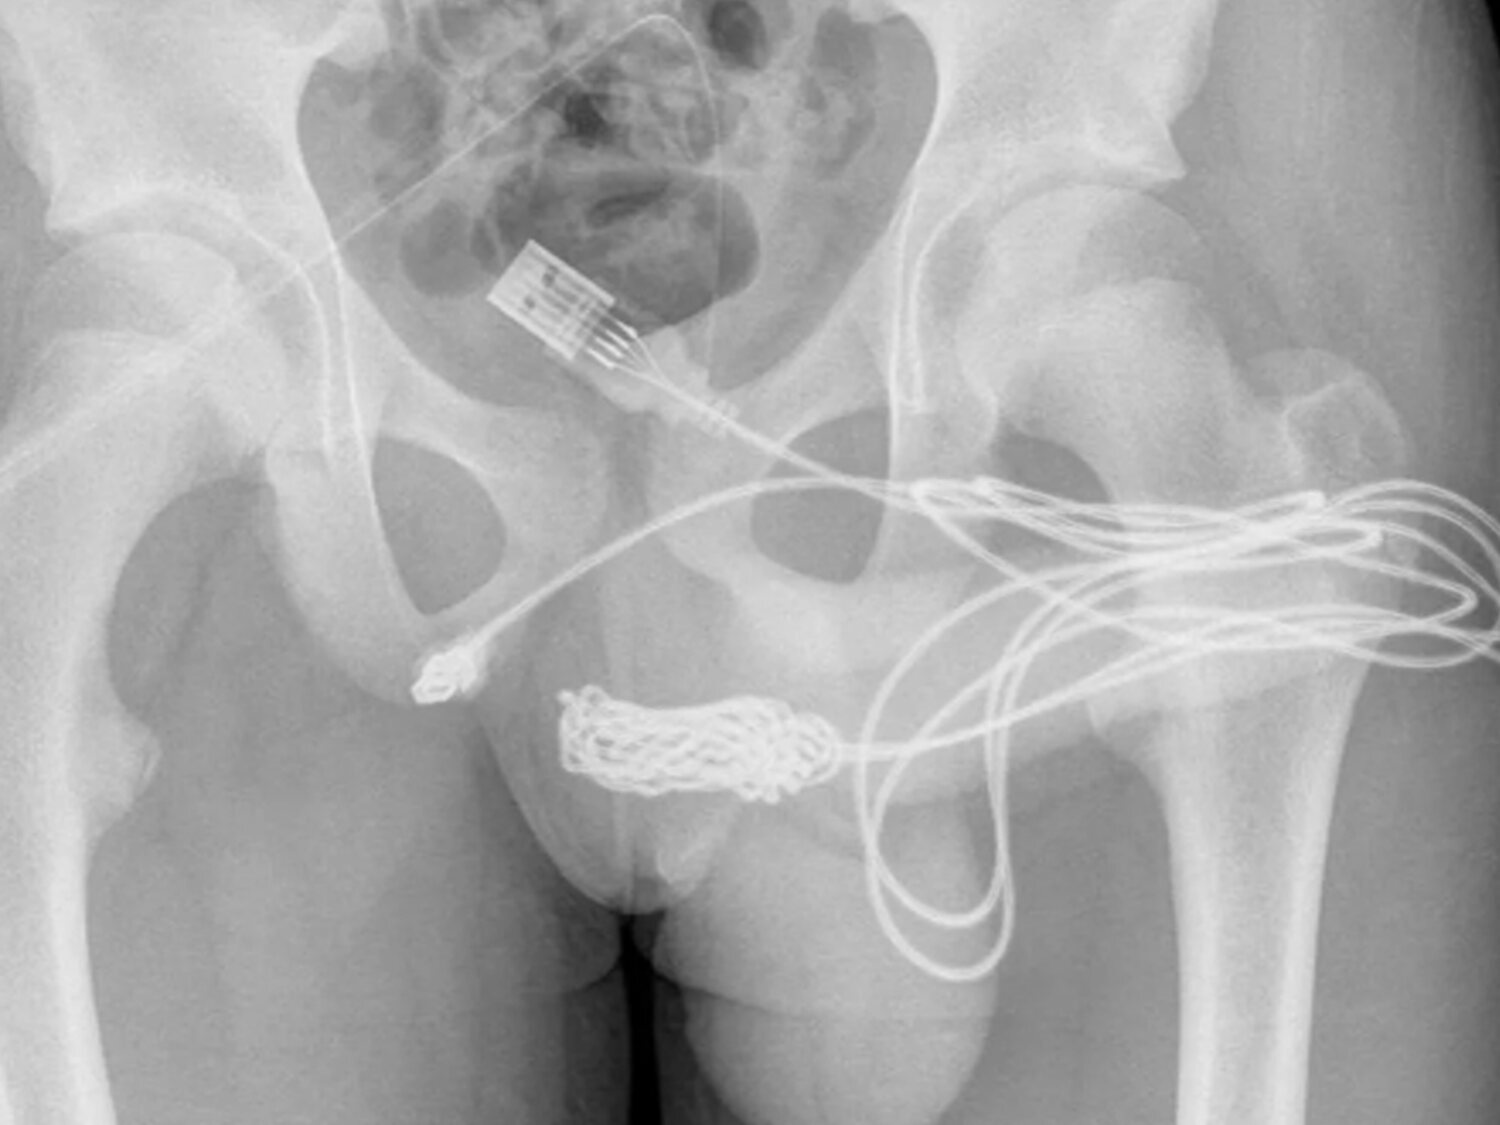 Un joven de 15 años, intervenido de urgencia por introducirse un cable USB para medir el interior de su pene